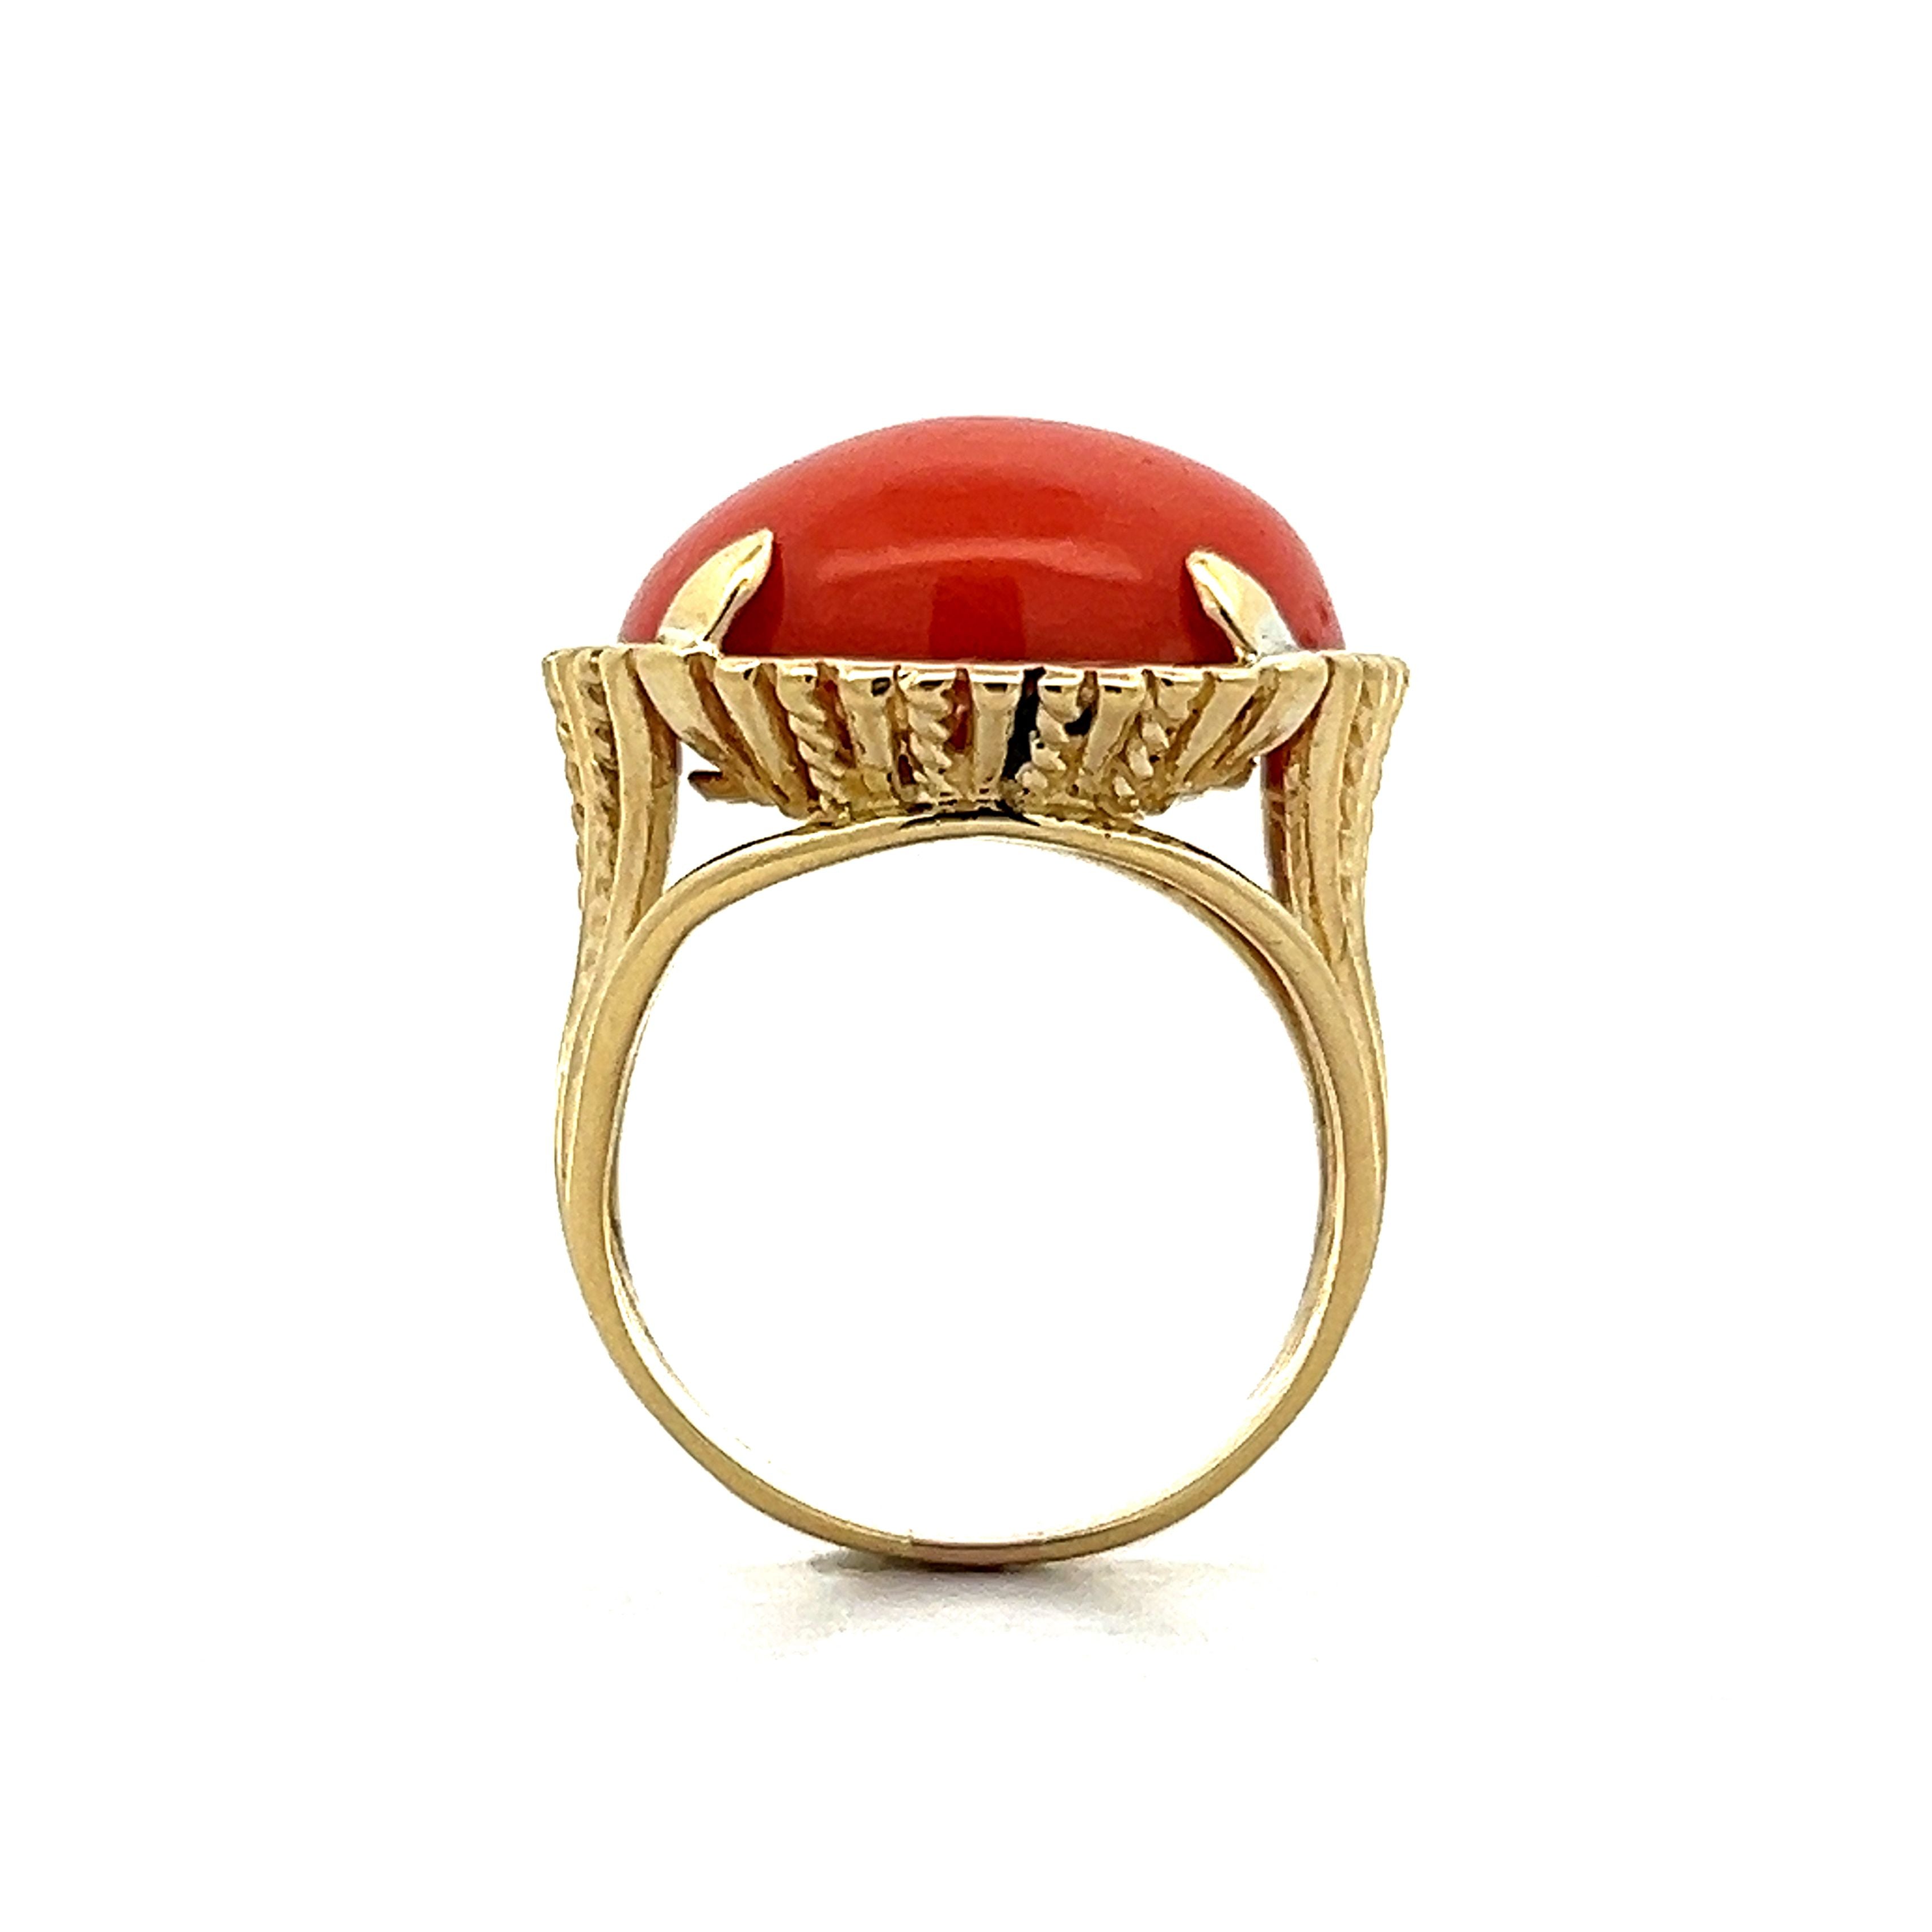 22K 22CT GENUINE YELLOW GOLD RING BAND RED CORAL MUNGA STONE BEAUTIFUL  HANDMADE | eBay